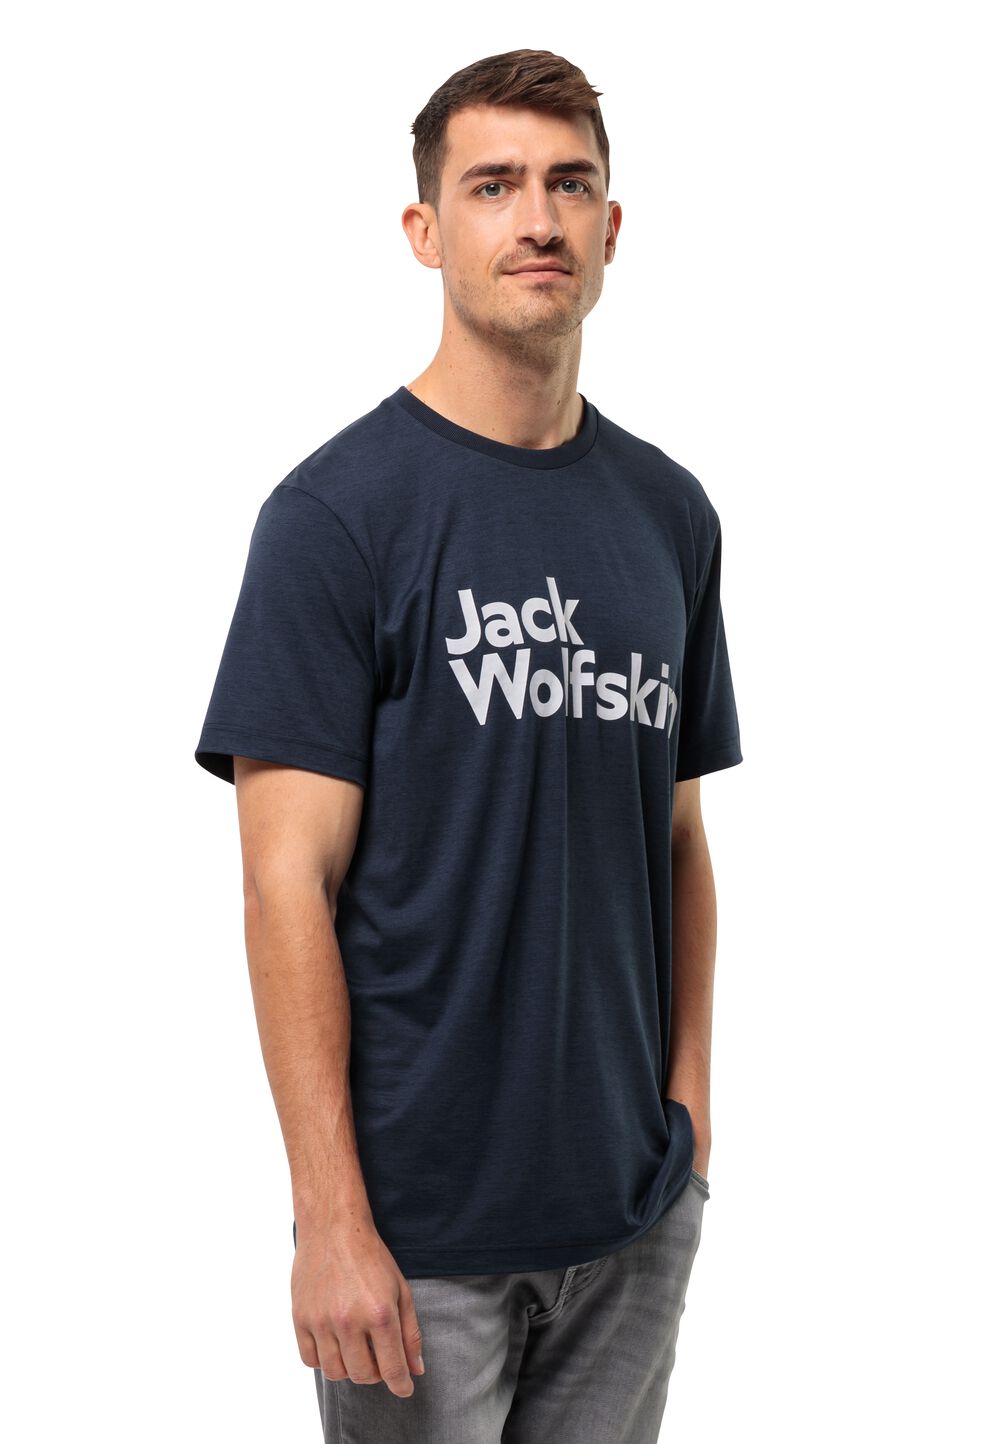 Jack Wolfskin Funktionsshirt Herren Brand T-Shirt Men XXL blau night blue von Jack Wolfskin